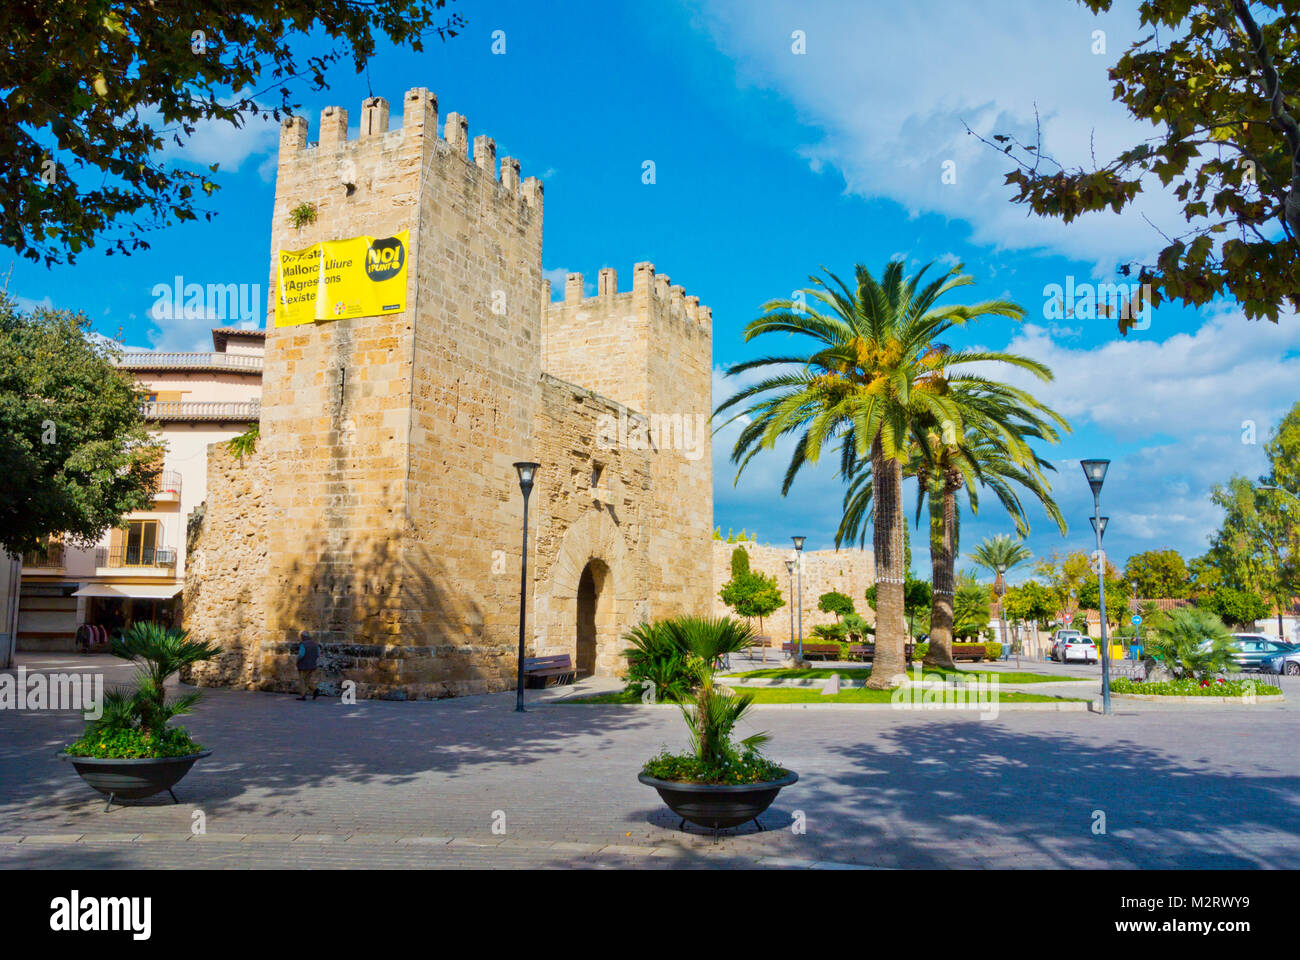 Placa Carles V, mit Porta del Moll, Alcudia, Mallorca, Balearen, Spanien Stockfoto